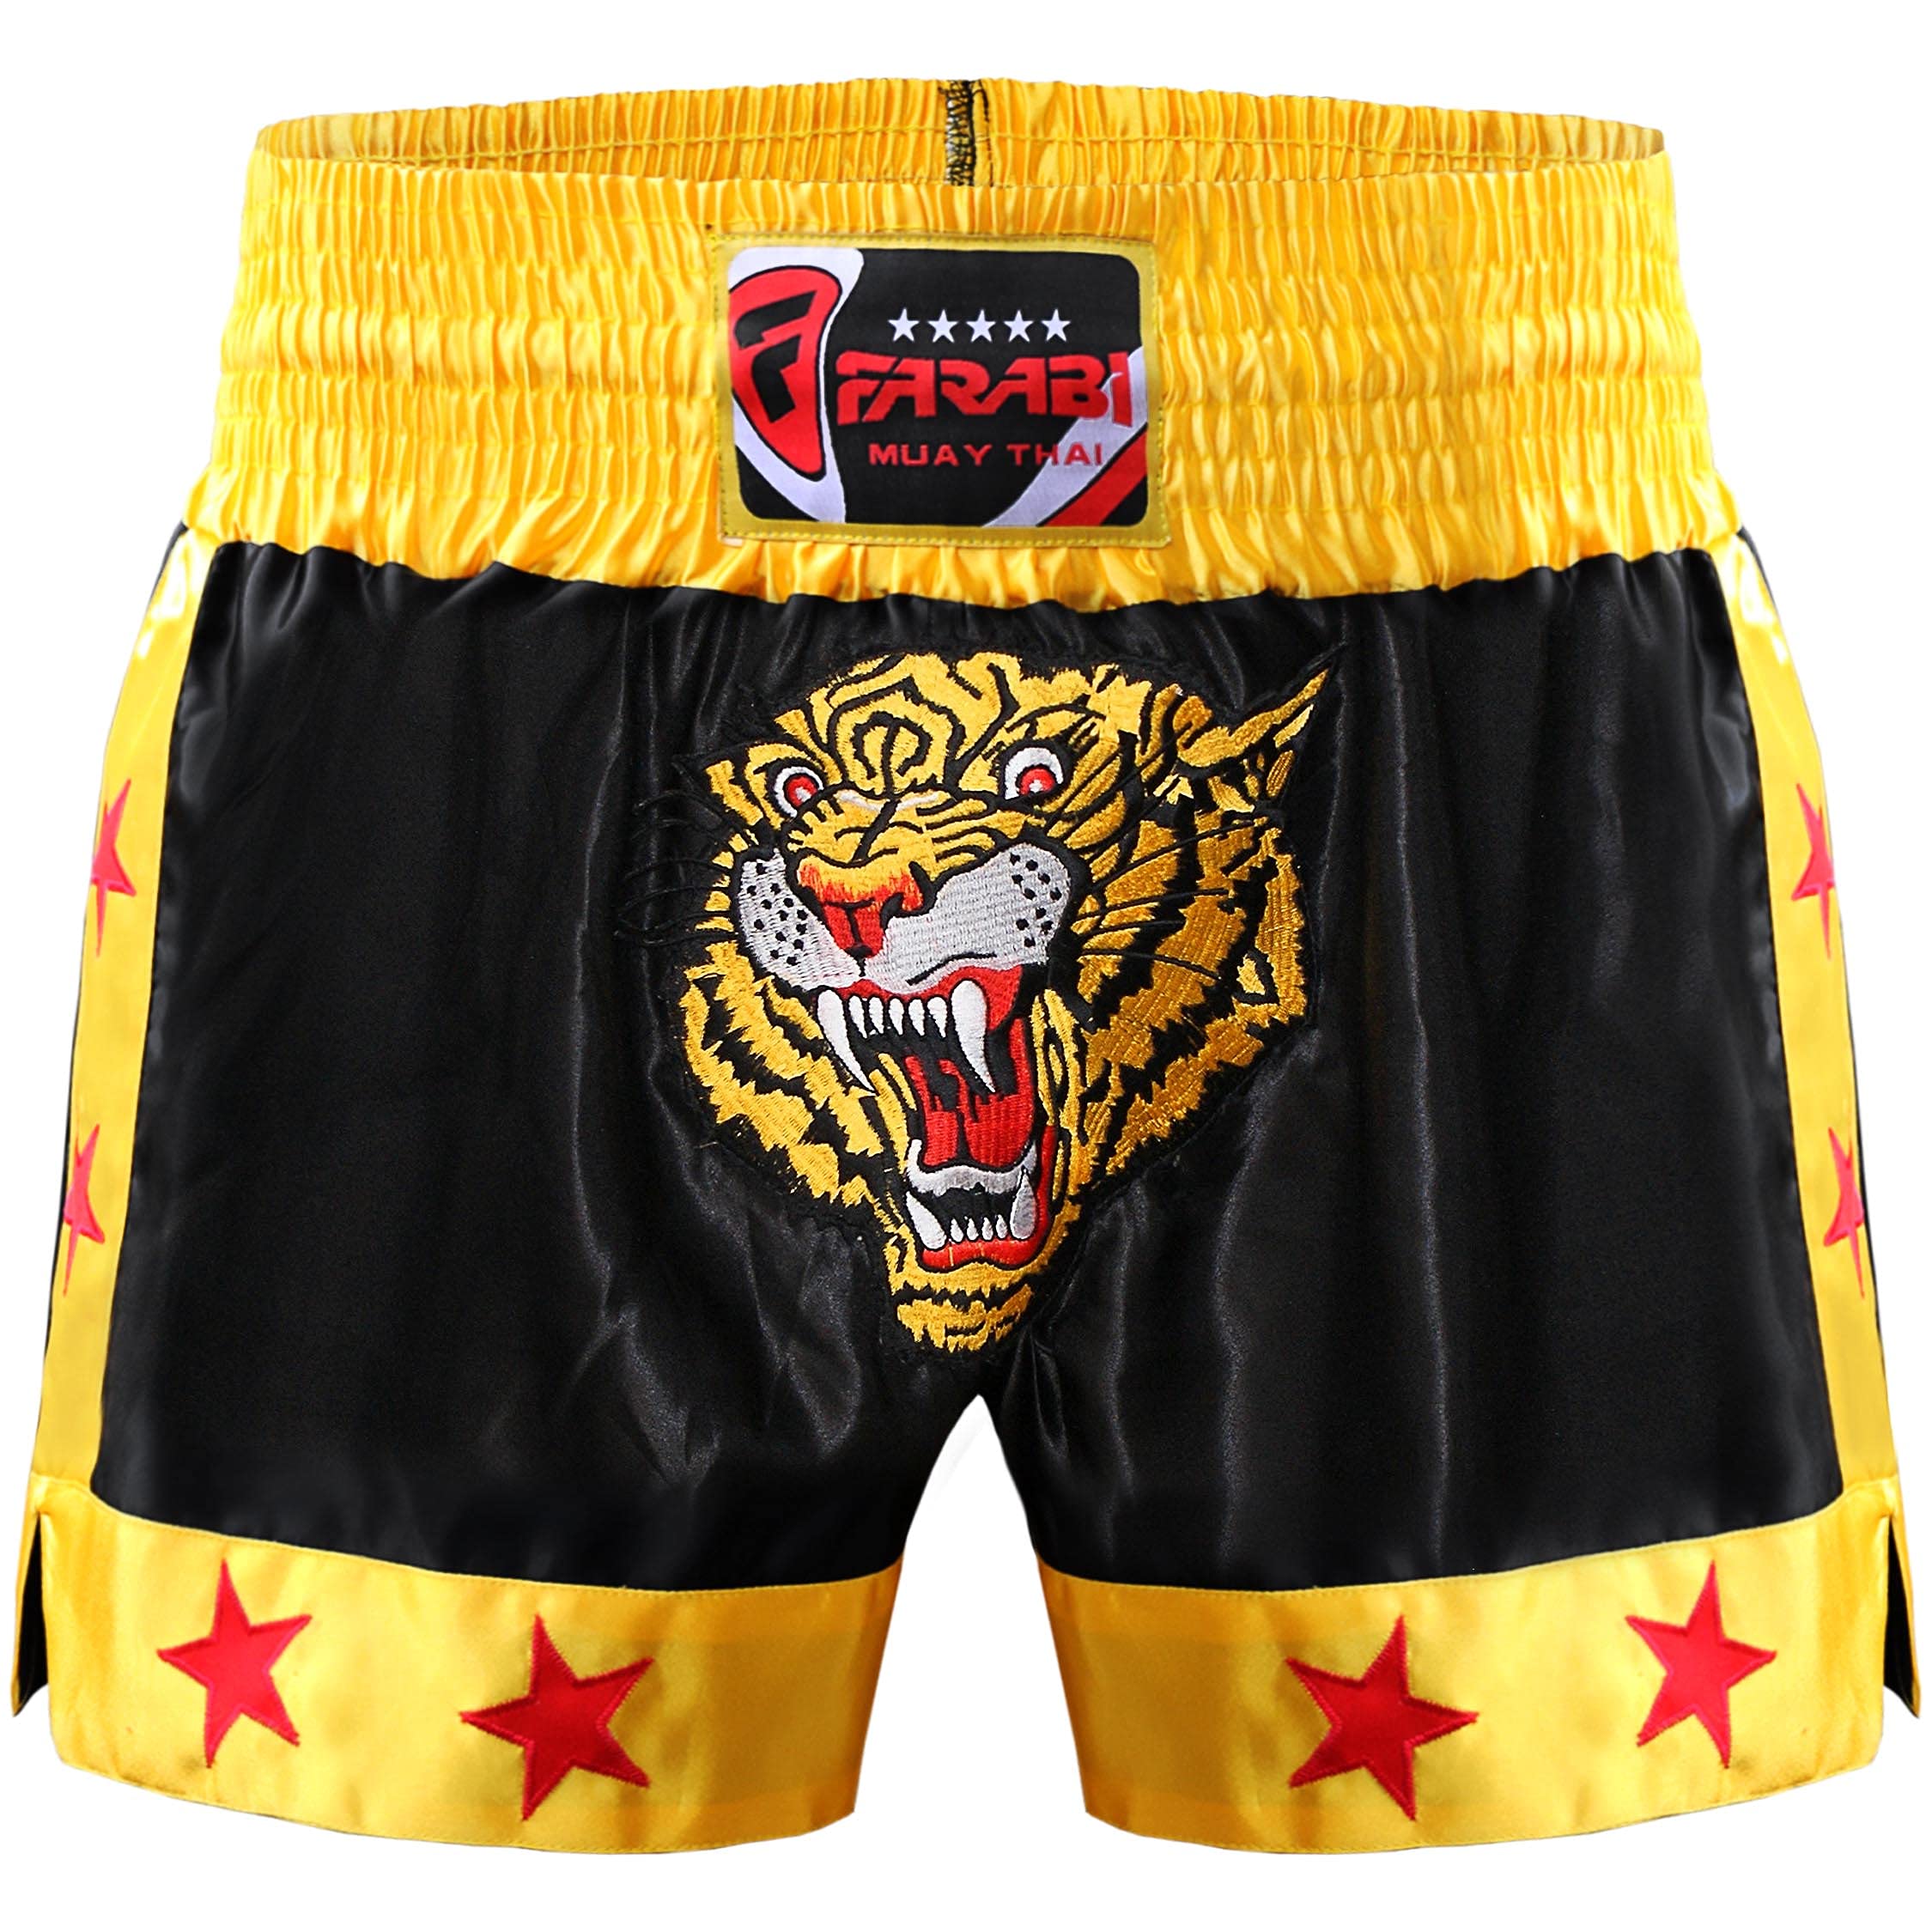 Farabi Sports Muay Thai Short Kickboxing Training Kampfsport Boxen Trunk (Black/Gold, XS)